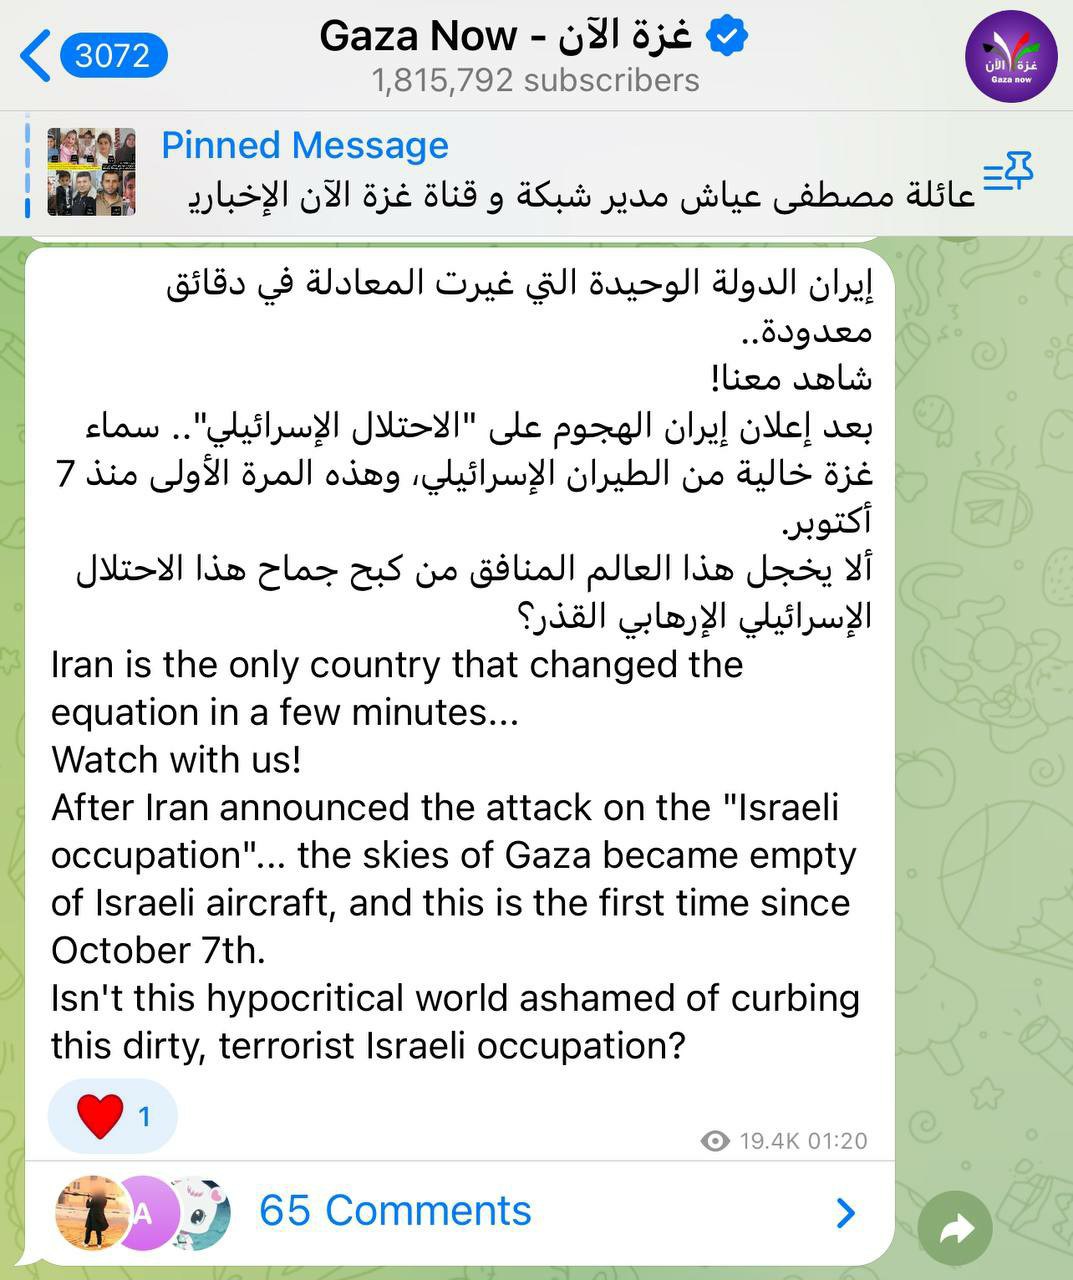 واکنش رسانه فراگیر فلسطینی به عملیات تنبیهی ایران علیه رژیم صهیونیستی